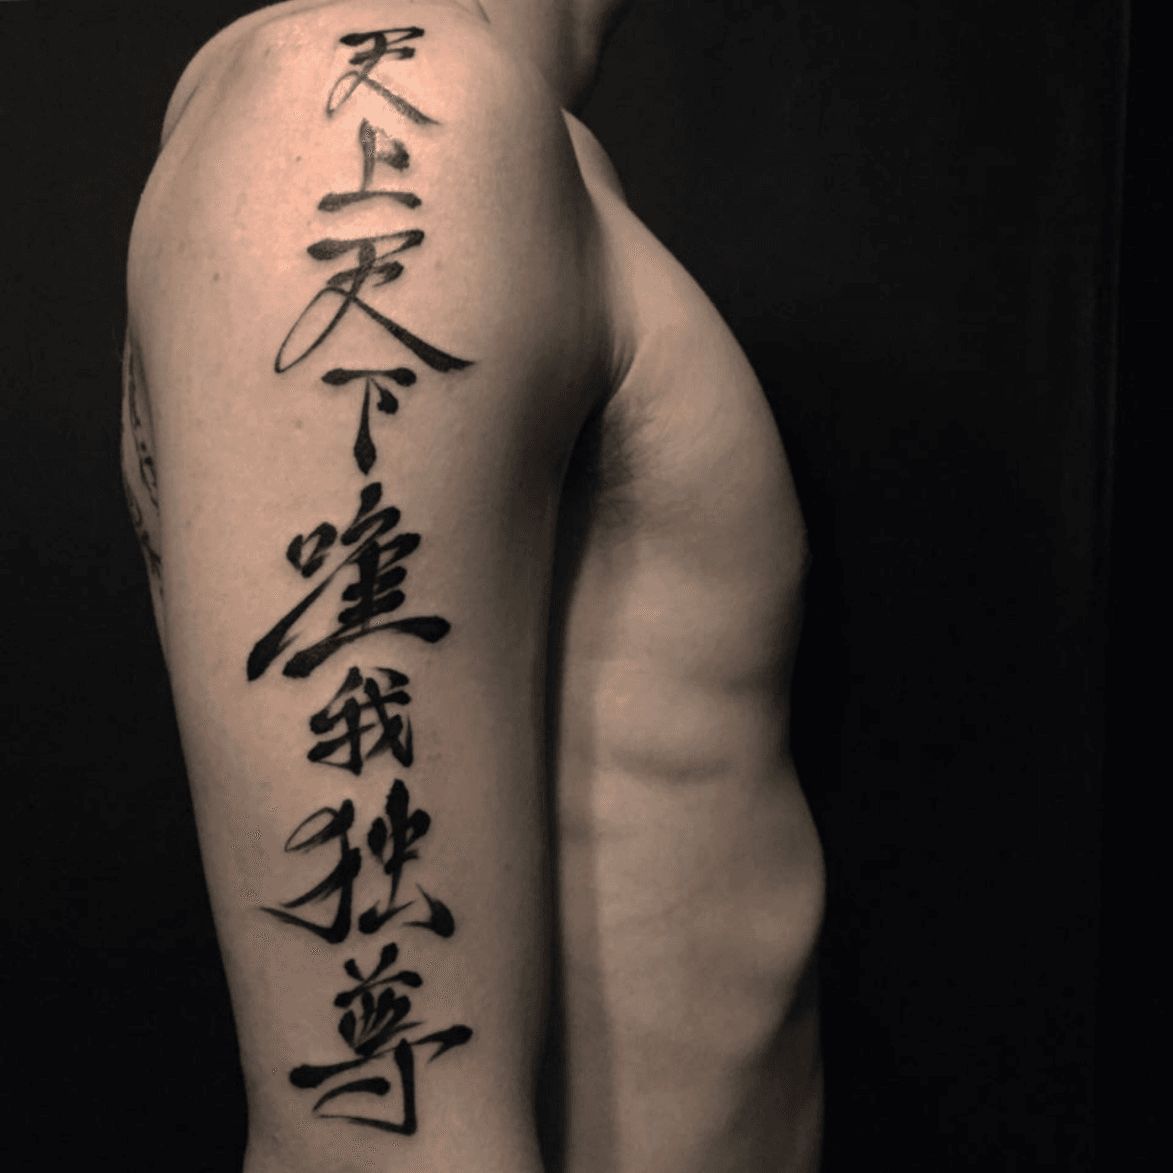 Tattoo uploaded by koji • kanji #tattoo #ink #JapaneseTattoo • Tattoodo